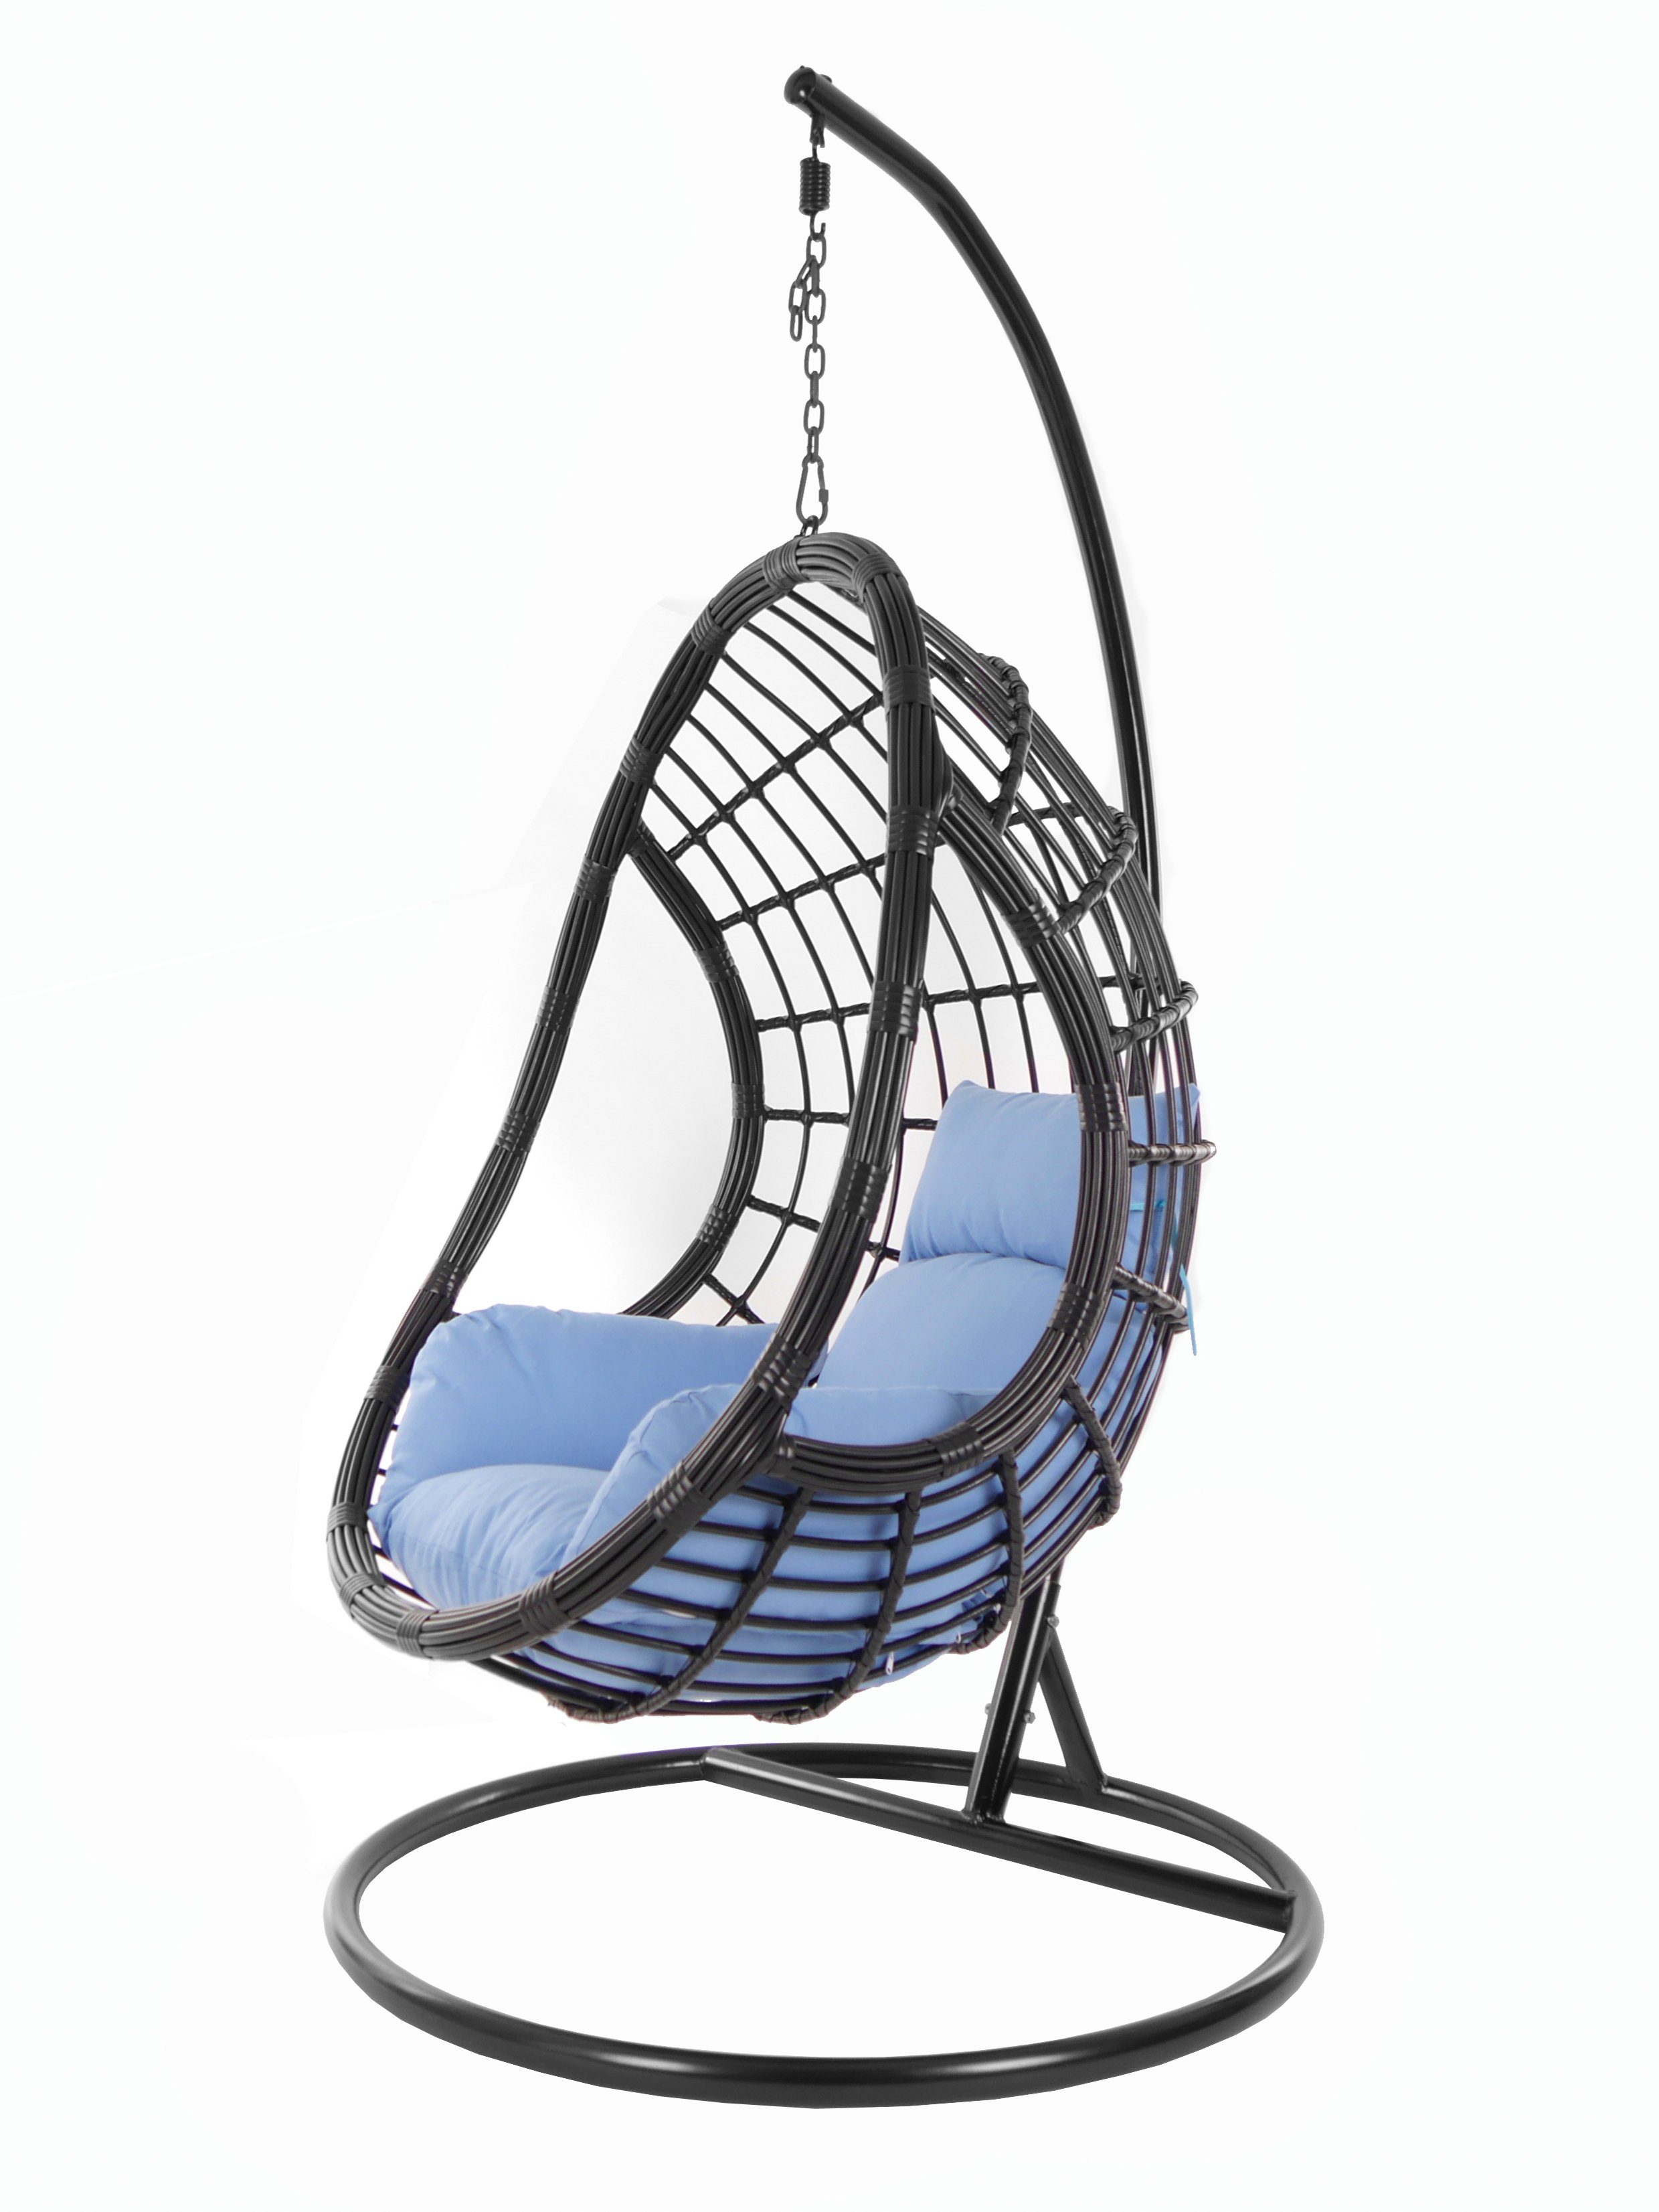 KIDEO Hängesessel PALMANOVA black, Schwebesessel, Swing Chair, Hängesessel mit Gestell und Kissen, Nest-Kissen königsblau (3070 royal blue)